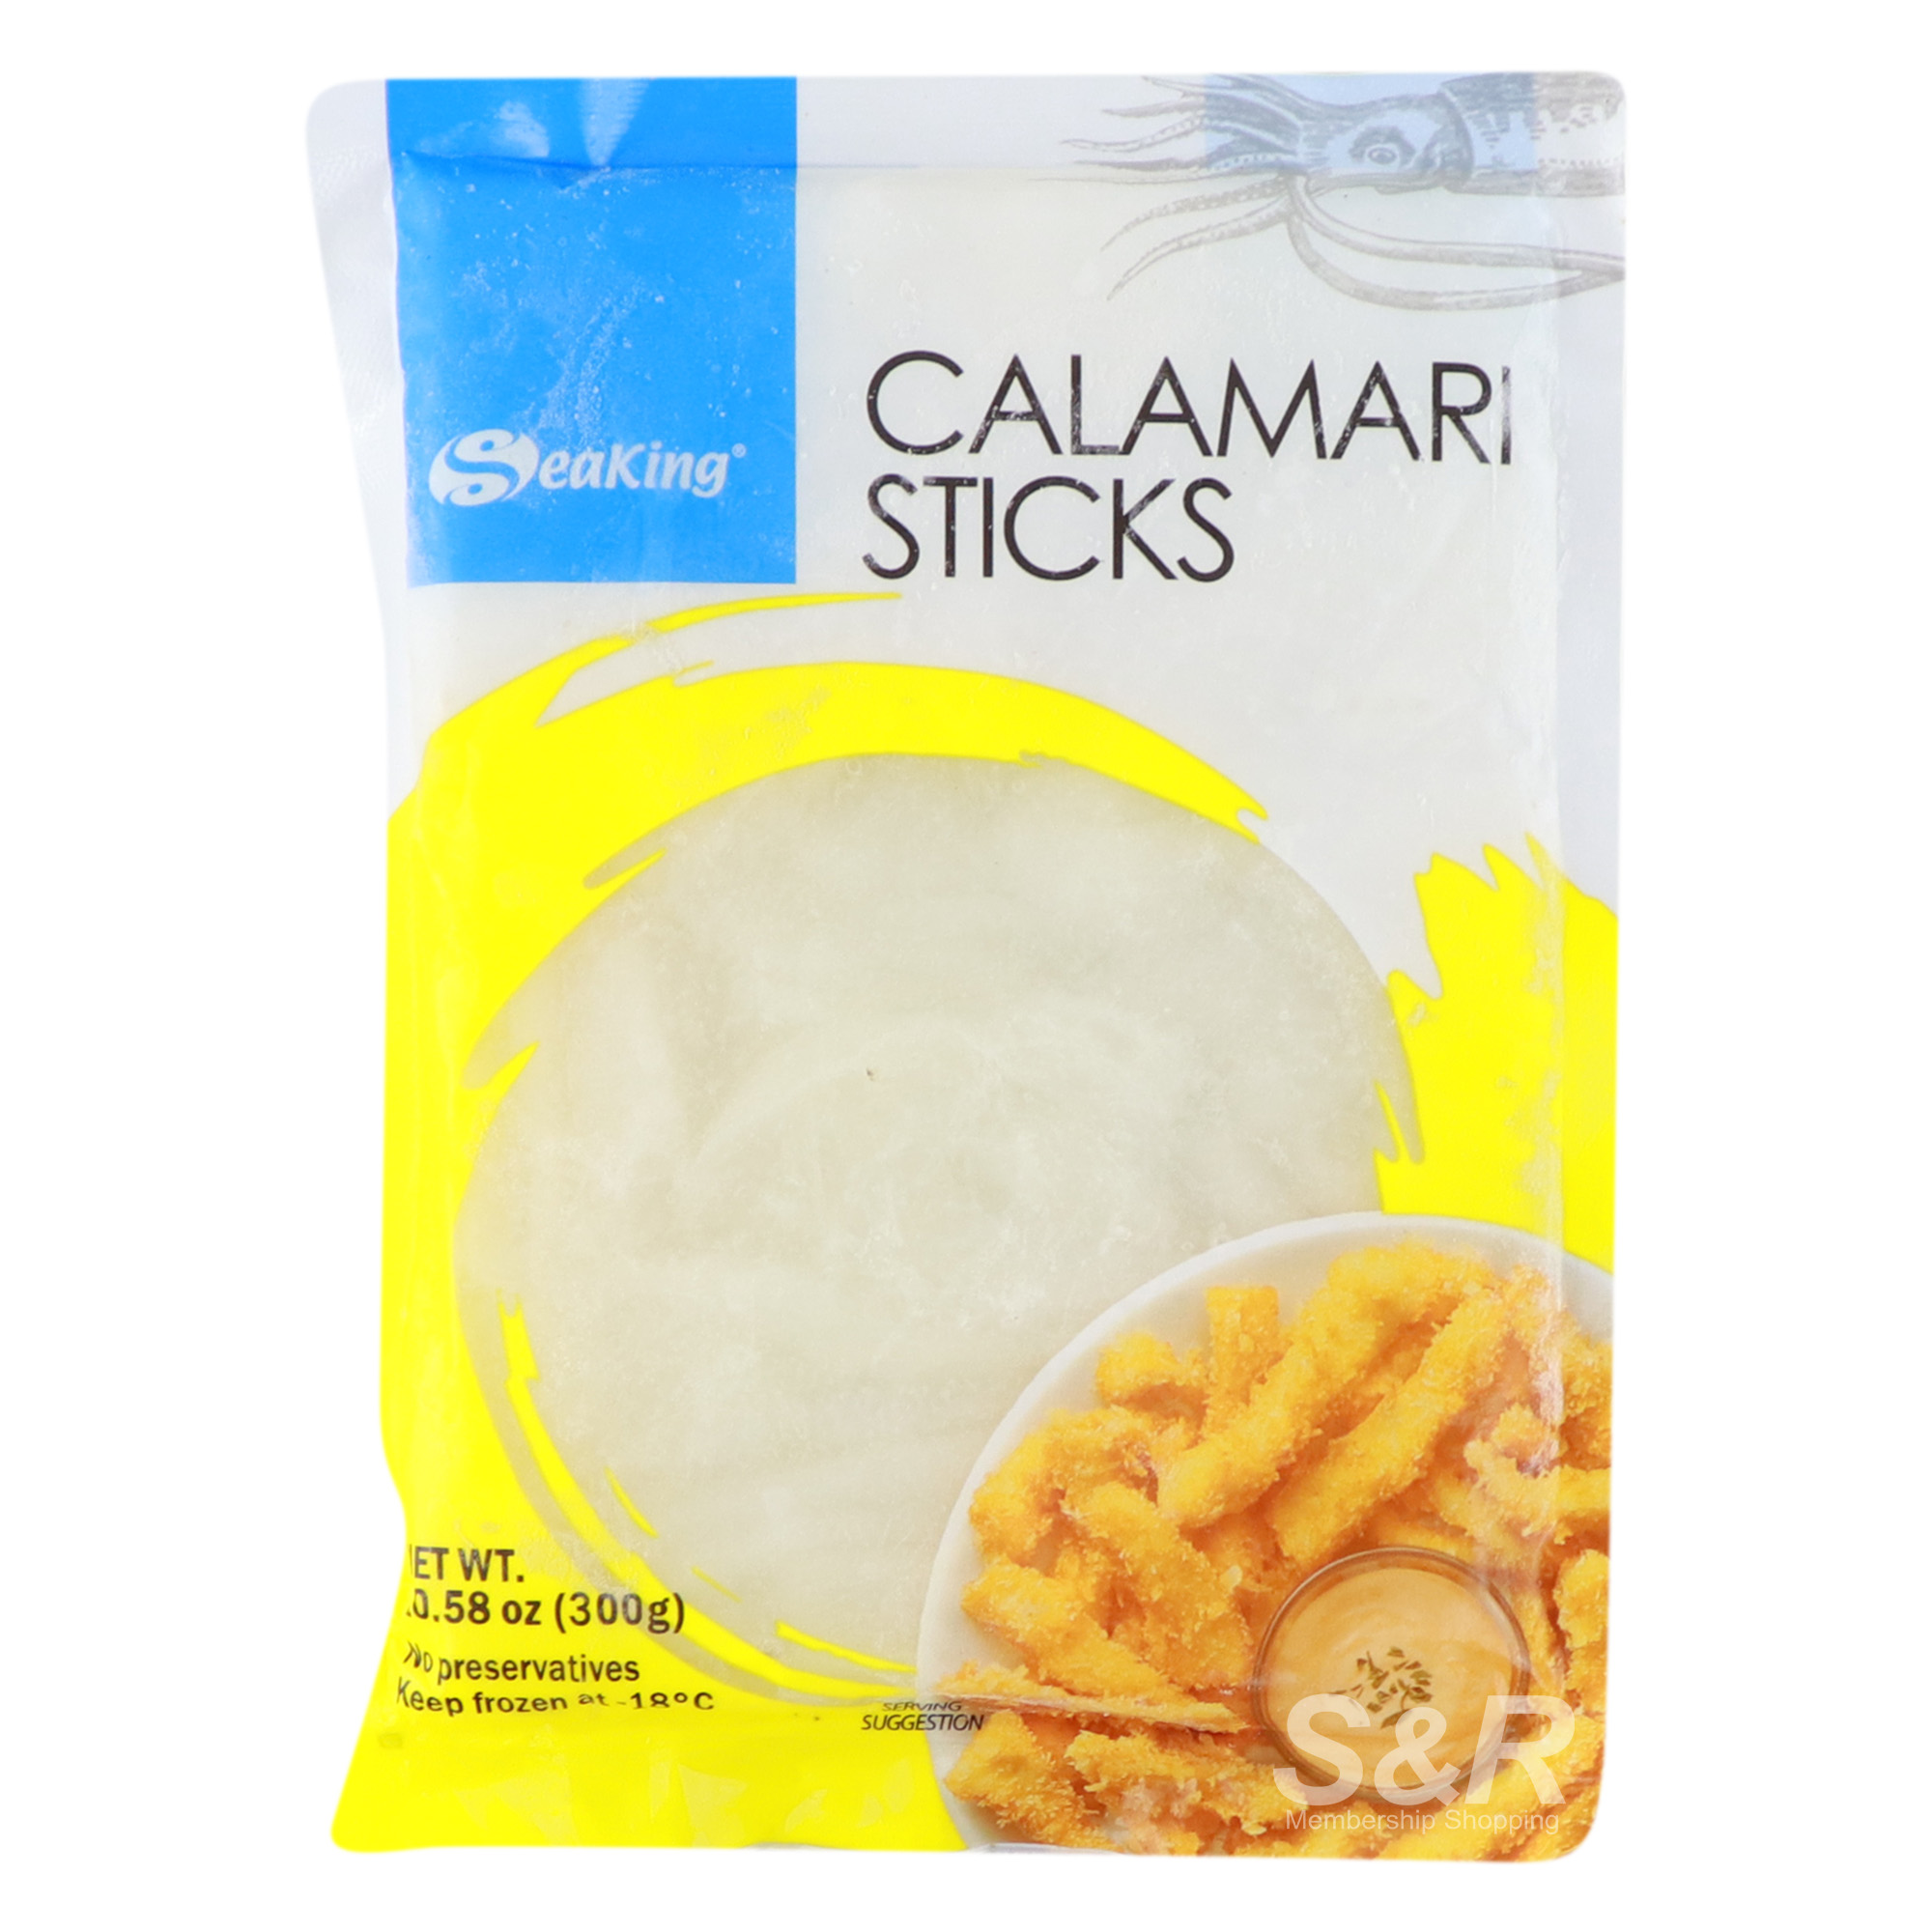 SeaKing Calamari Sticks 300g